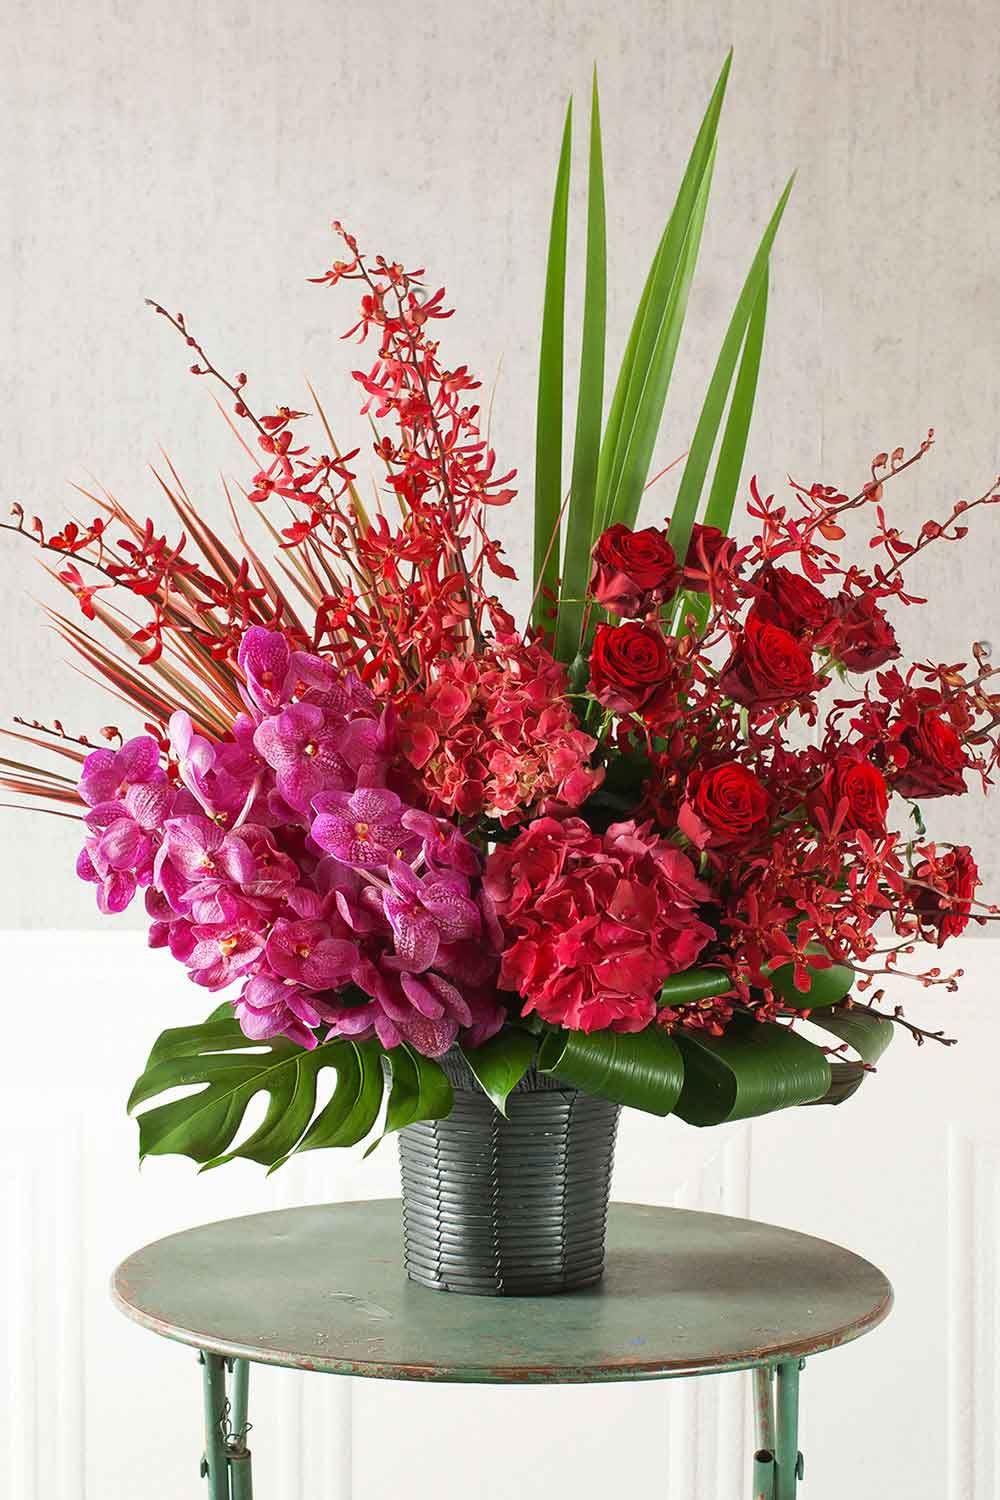 アレンジメント オリエンタルレッド 赤 ピンク Lサイズ 高さ約75cm 仕事や個人の功労お祝い花 会社編 お祝い お供えの花通販ギフトは送料無料の お花の窓口 へ